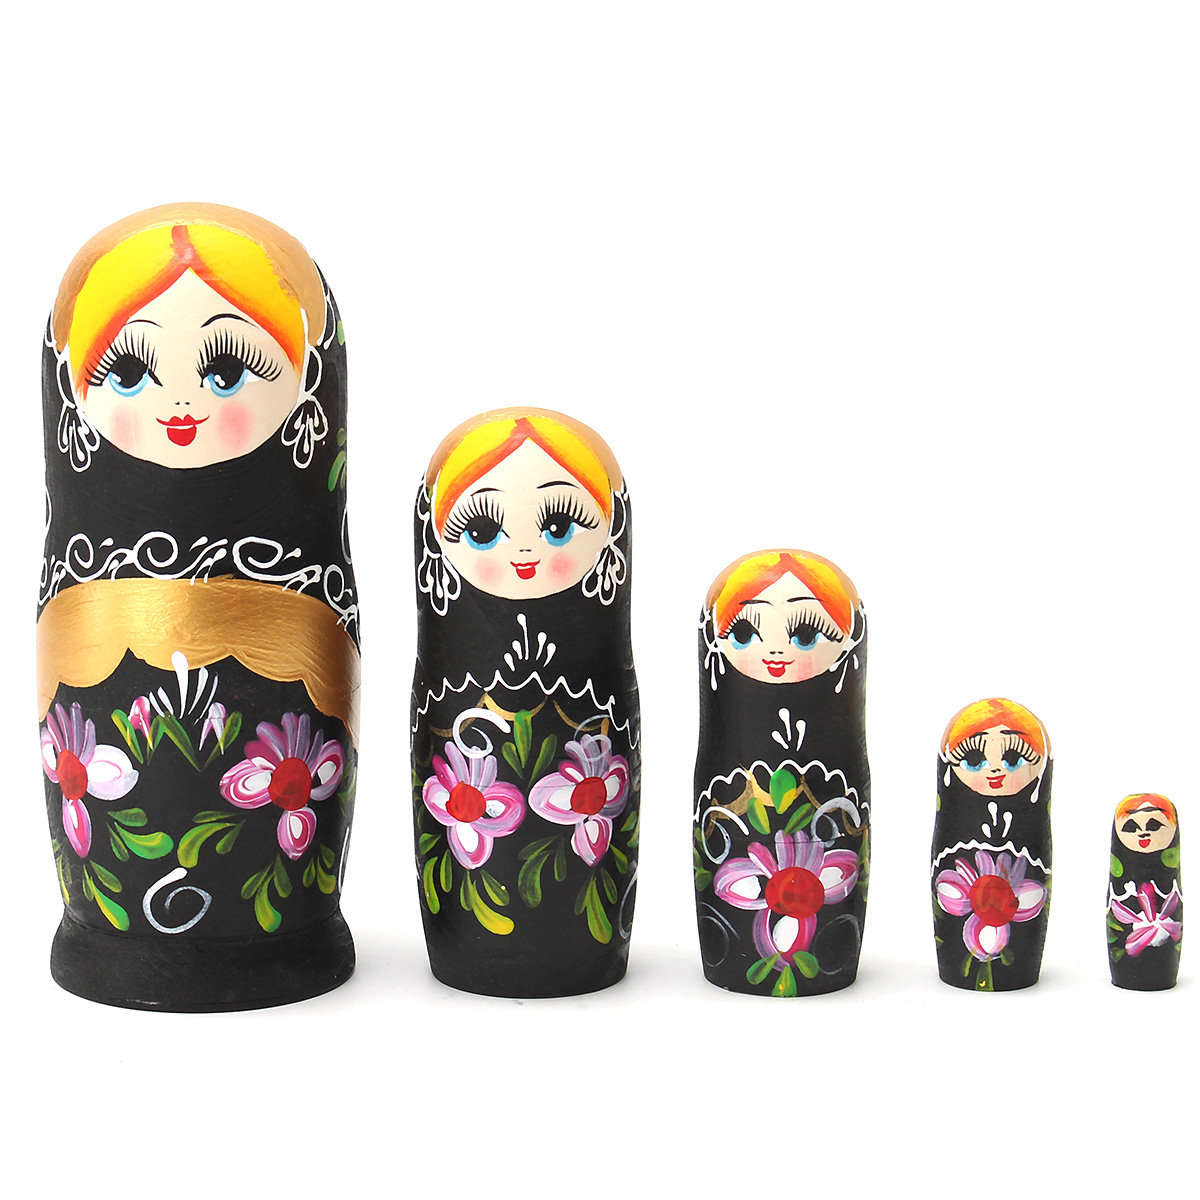 

5pcs Matryoshka Russian Nesting Dolls